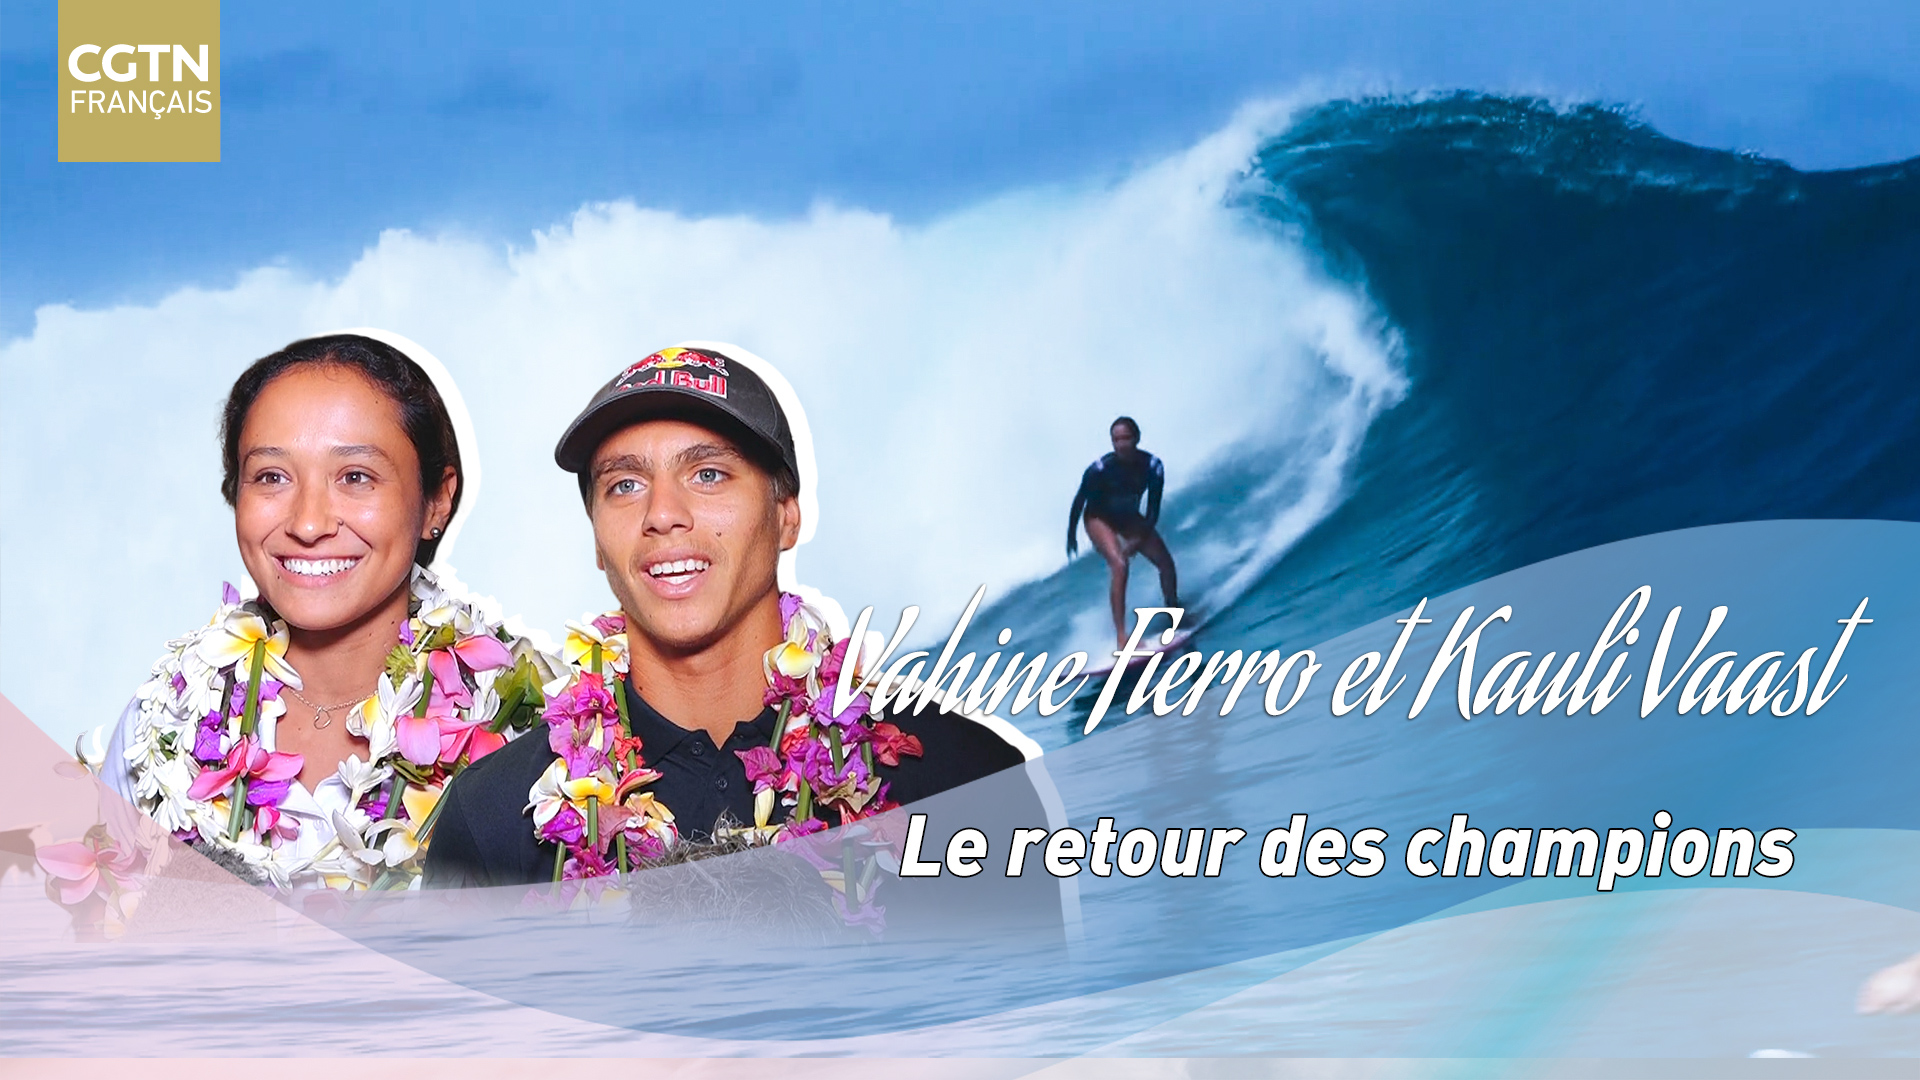 Surf Vahine Fierro Et Kauli Vaast Le Retour Des Champions Cgtn